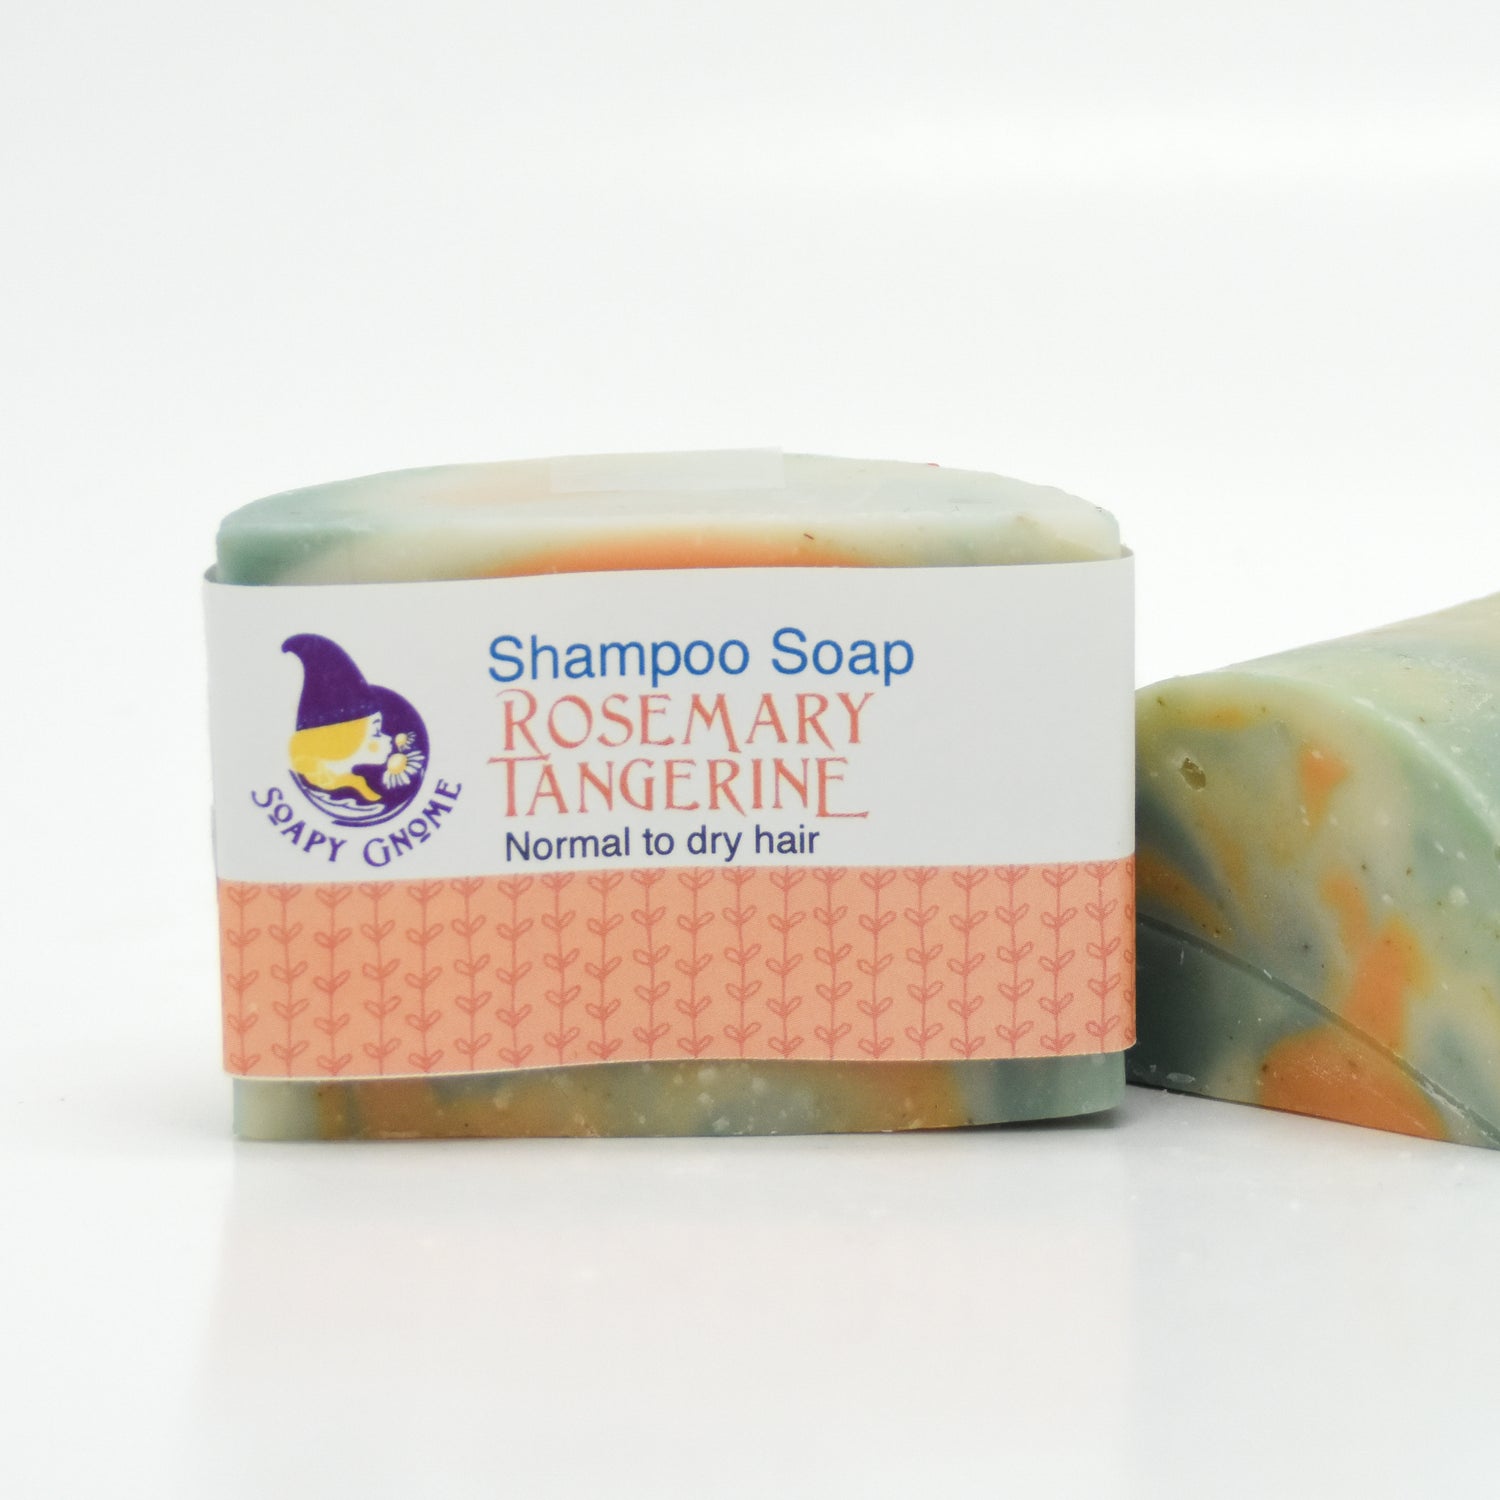 Rosemary Tangerine Shampoo Soap